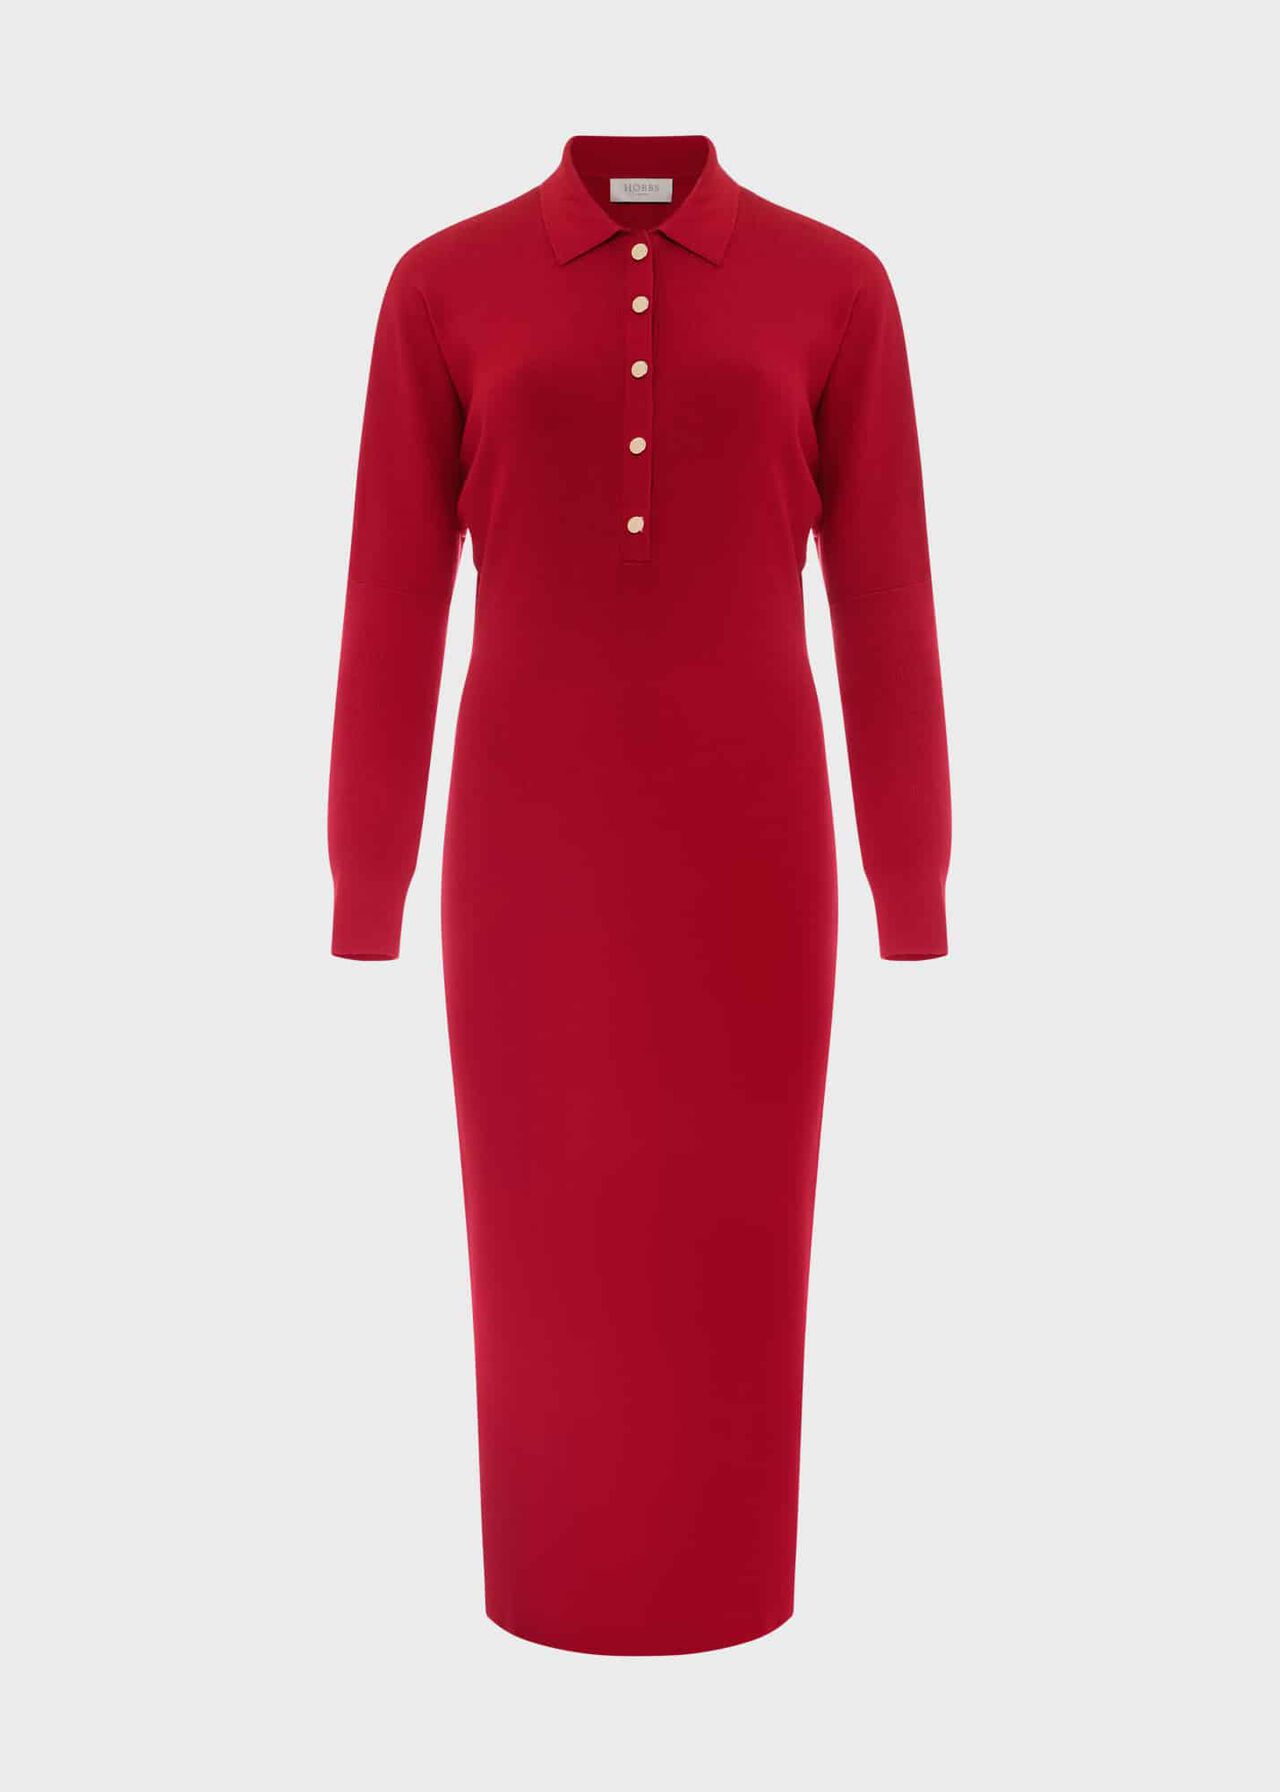 Arabelle Knit Dress, Red, hi-res